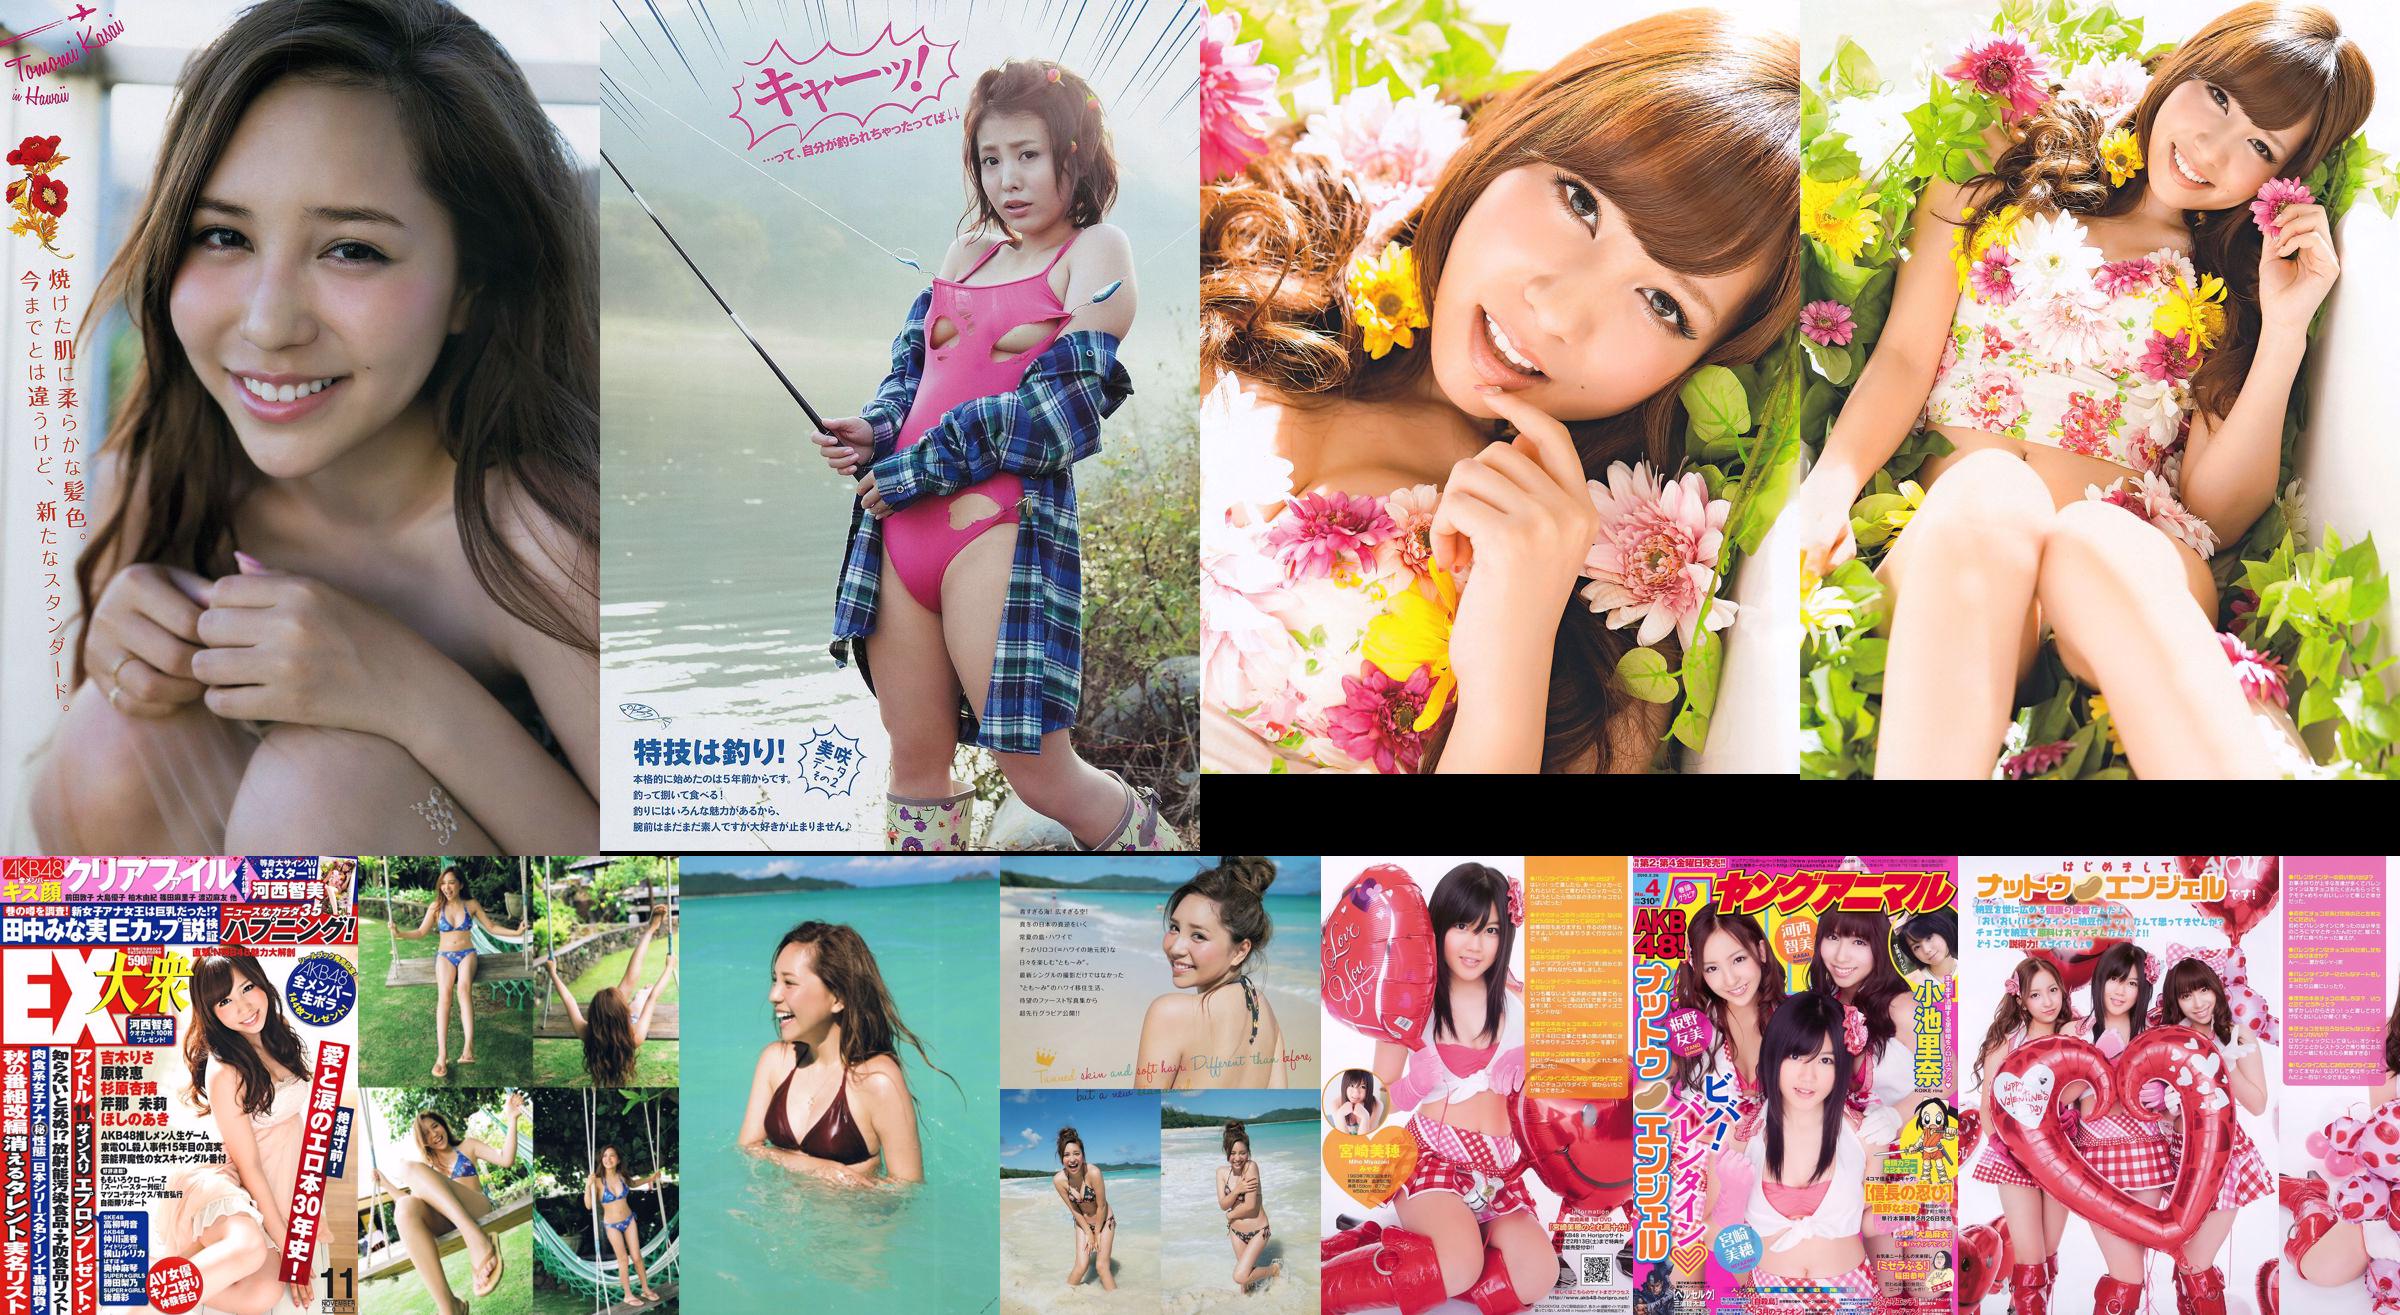 [Young Magazine] Tomomi Kasai Misaki Yumoto 2014 nr 08 foto No.1073ea Pagina 1